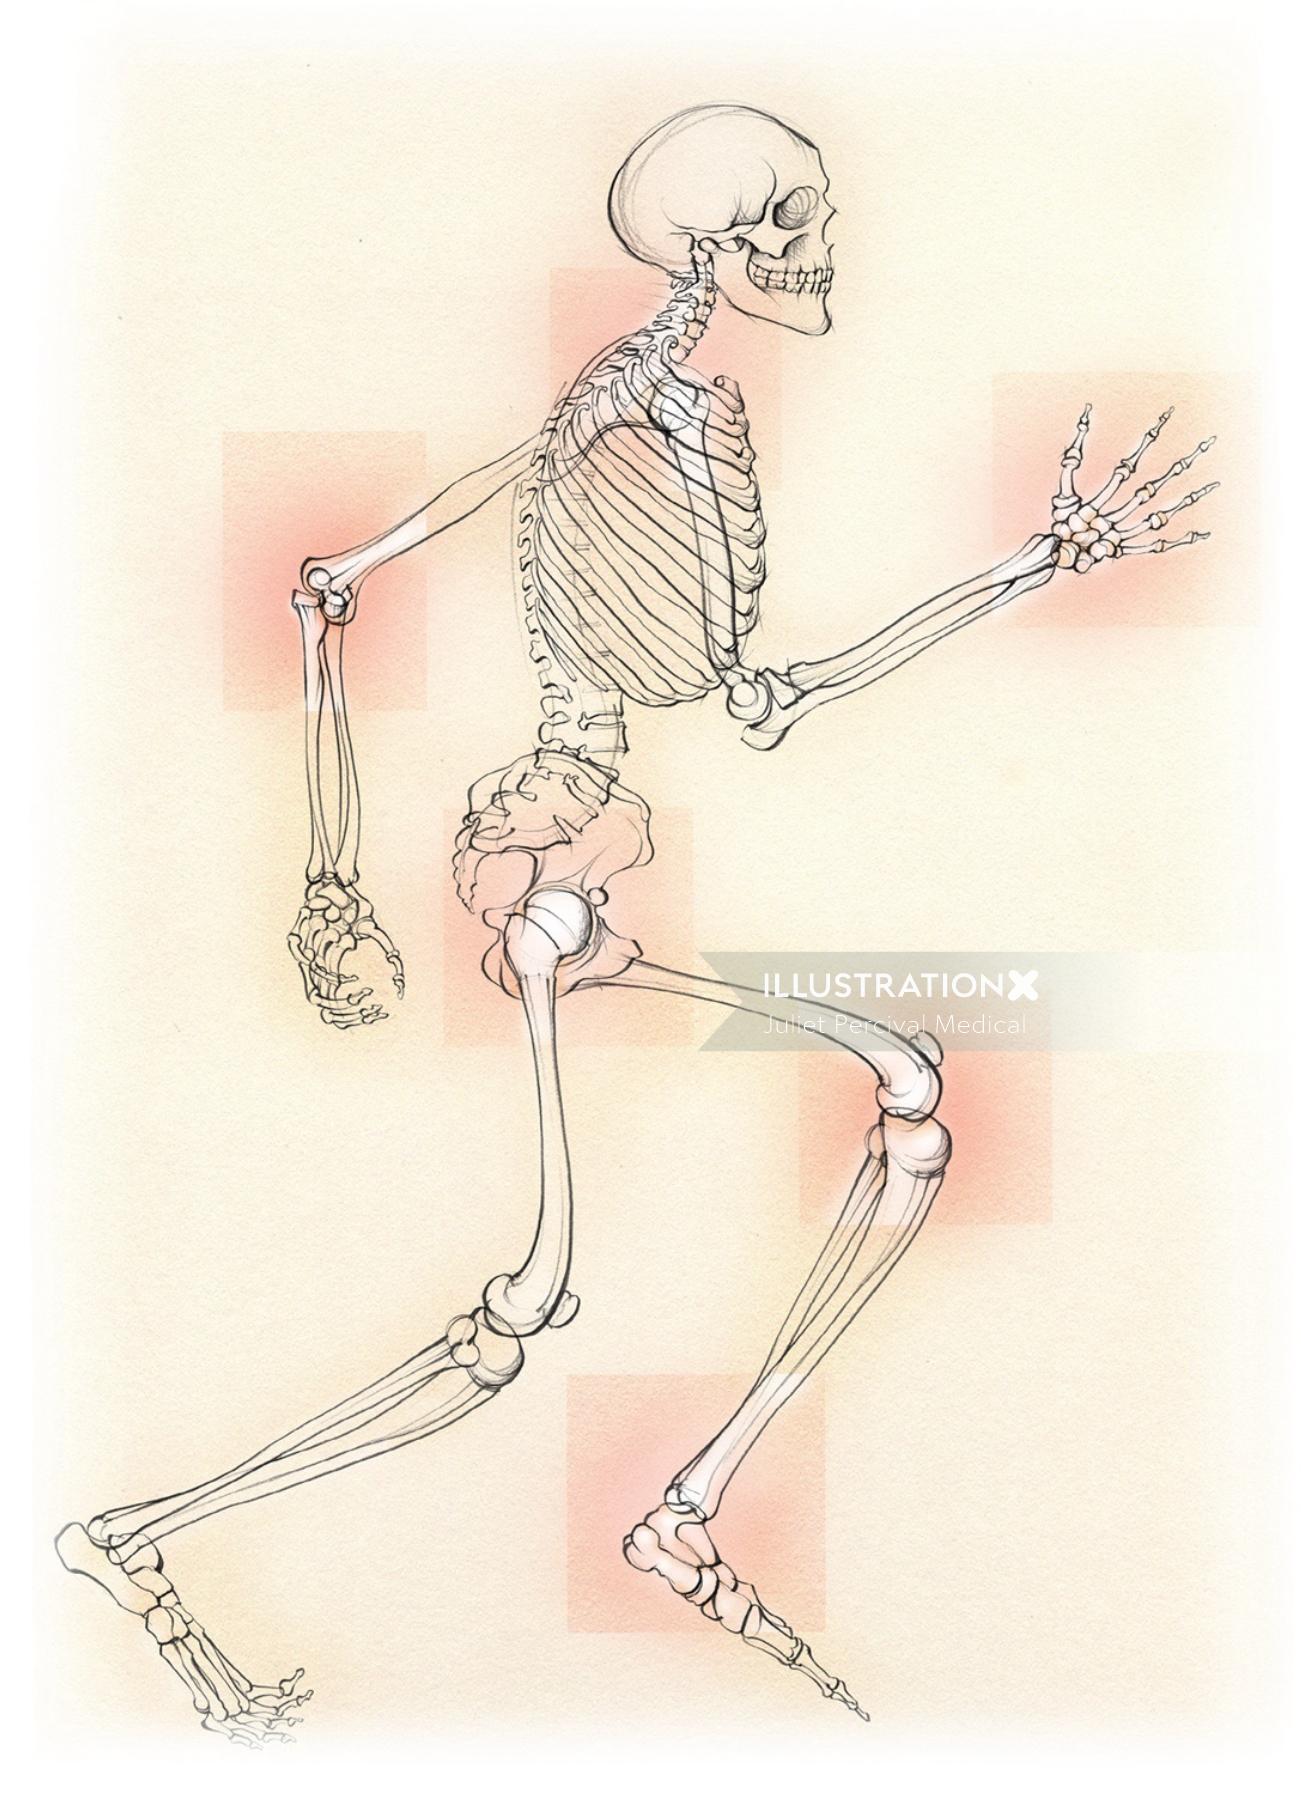 医療、解剖学、骨格、変形性関節症、関節